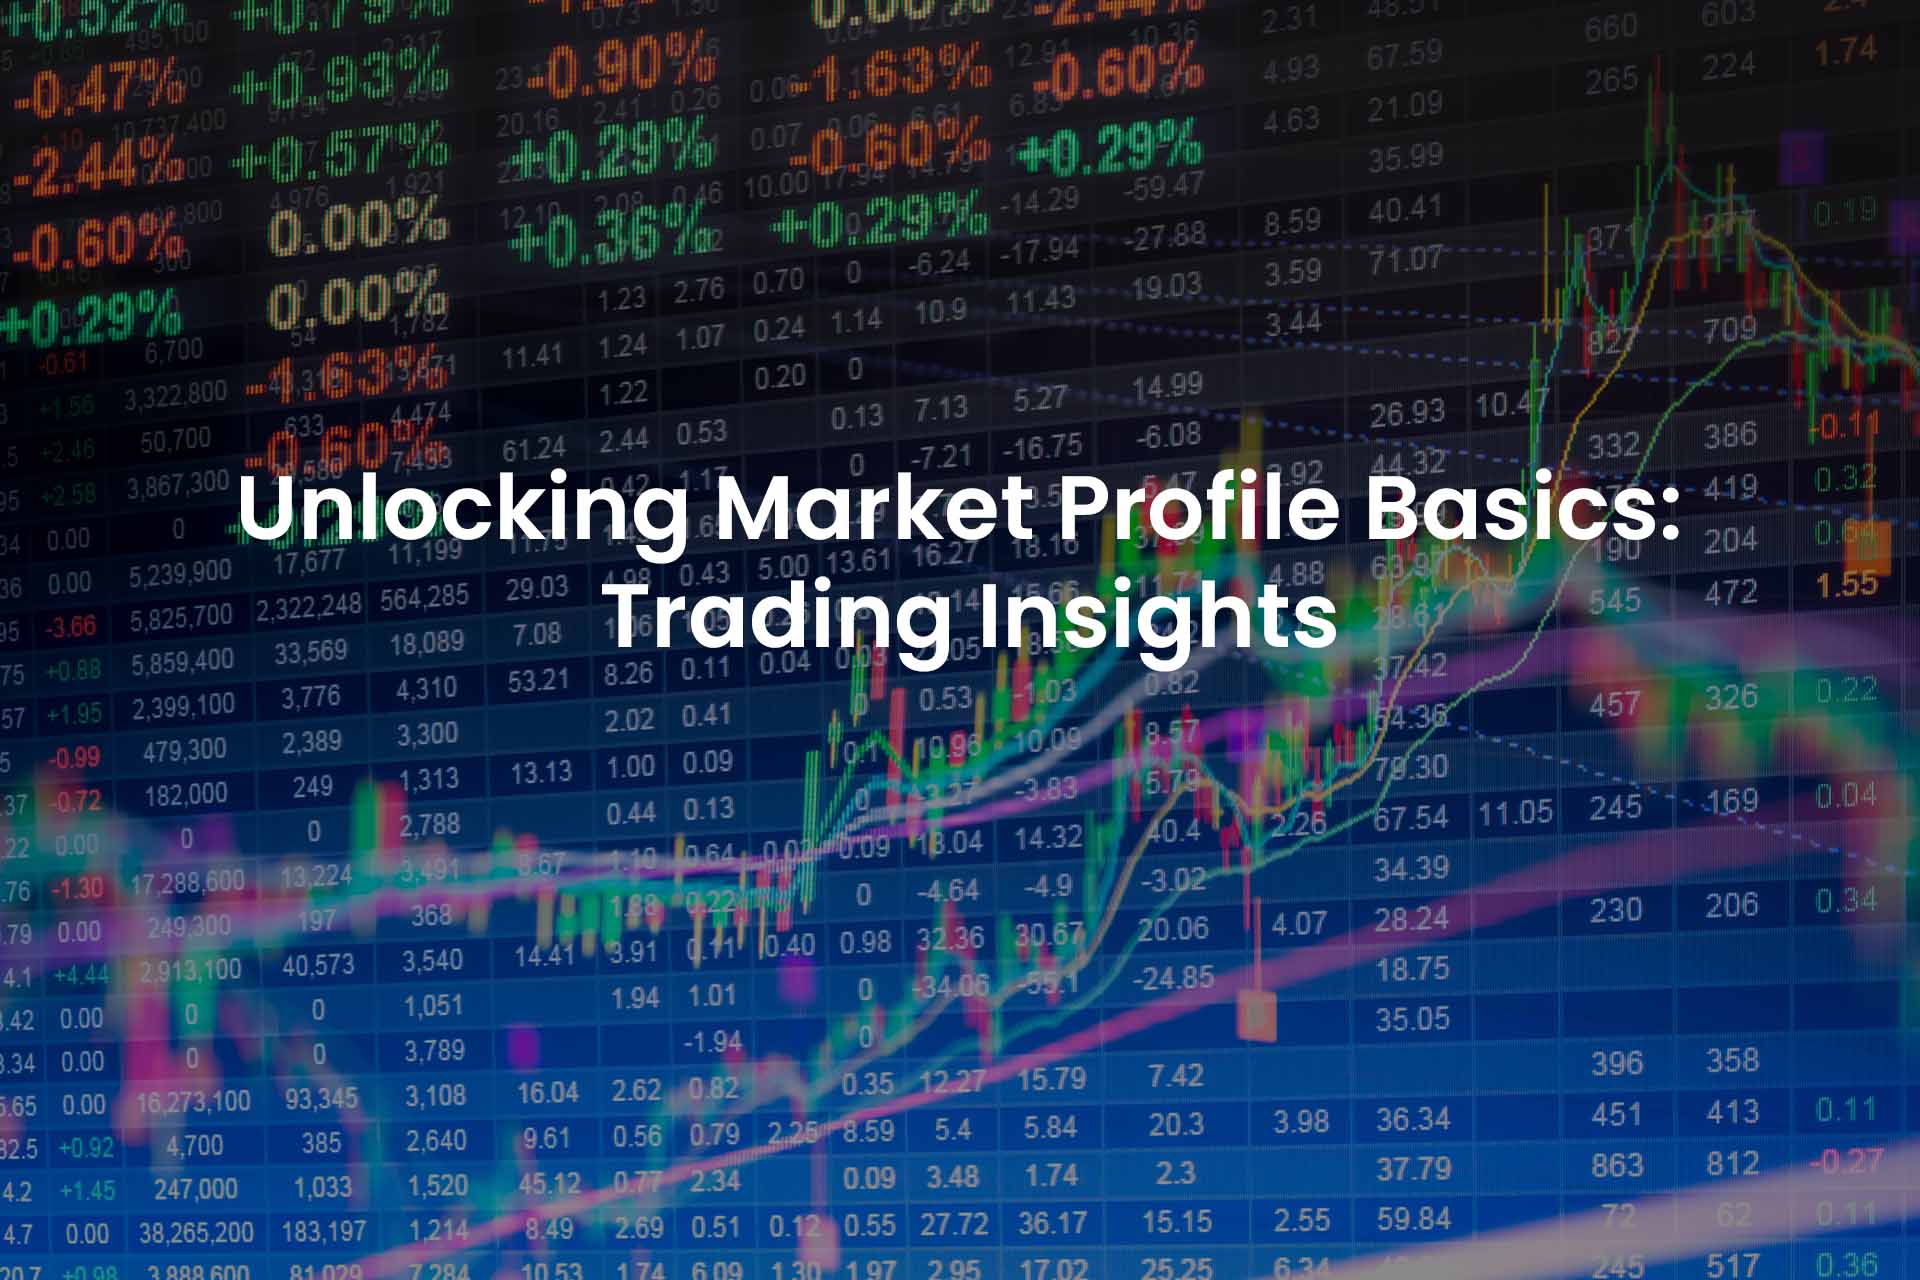 Unlocking Market Profile Basics: Trading Insights